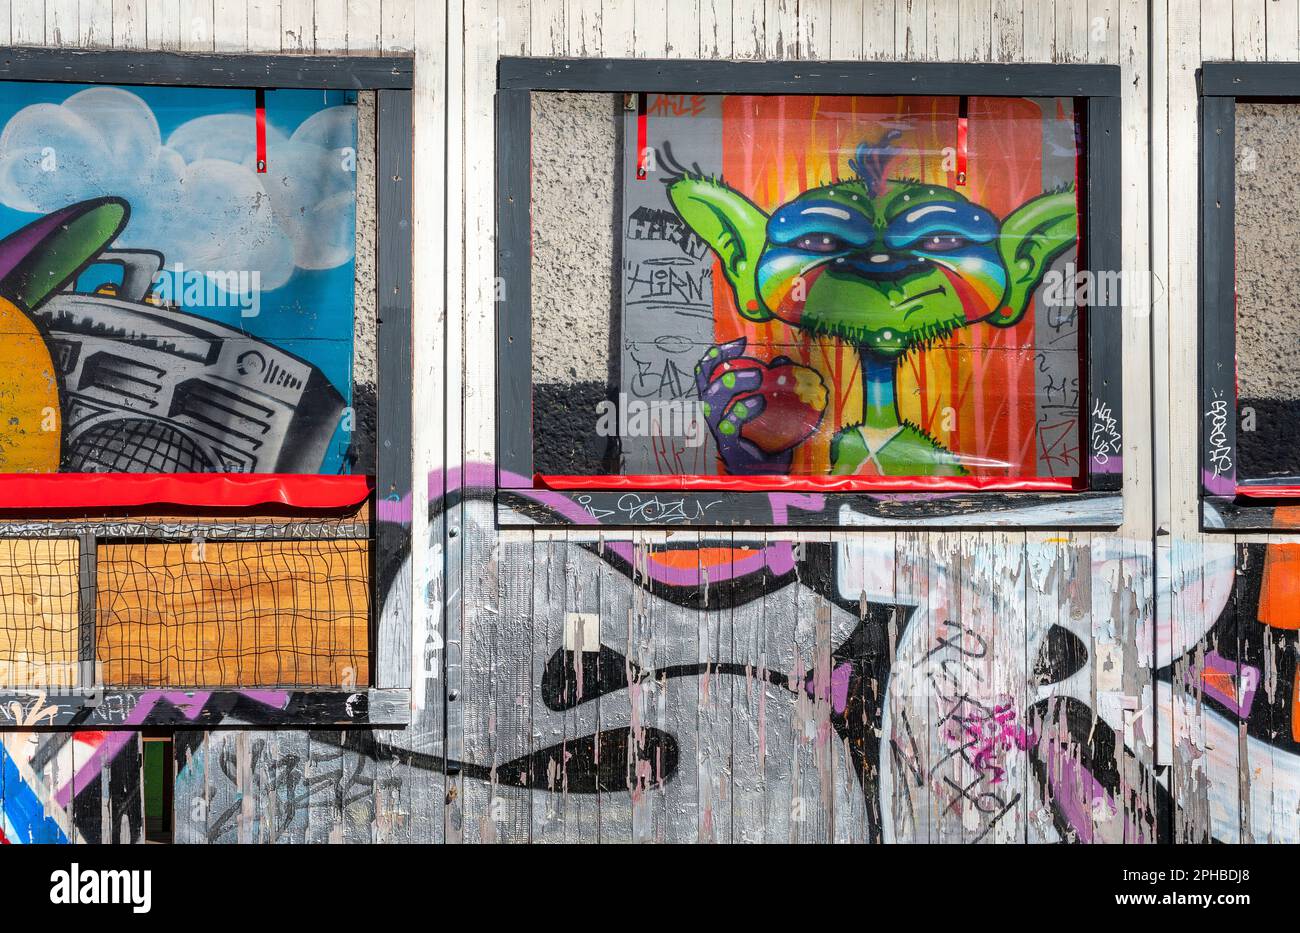 Graffiti, Reichsbahnausbesserungswerk RAW, Friedrichshain, Berlin, Germany Stock Photo